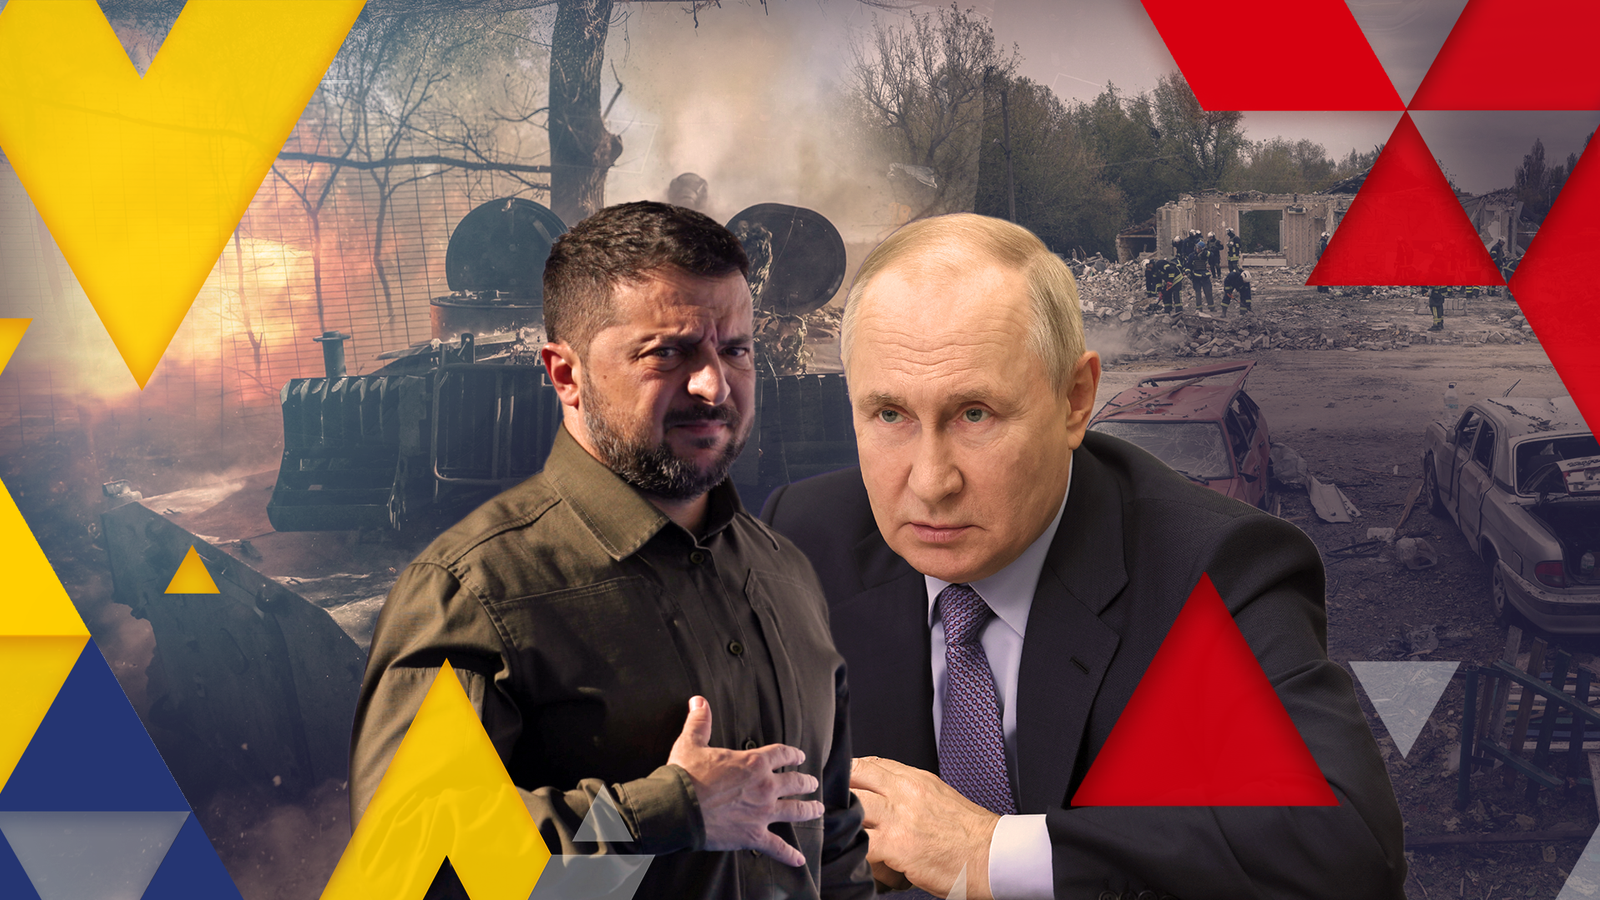 Le soutien occidental à l’Ukraine diminue, mais c’est à Zelensky de décider de la suite |  Nouvelles du monde